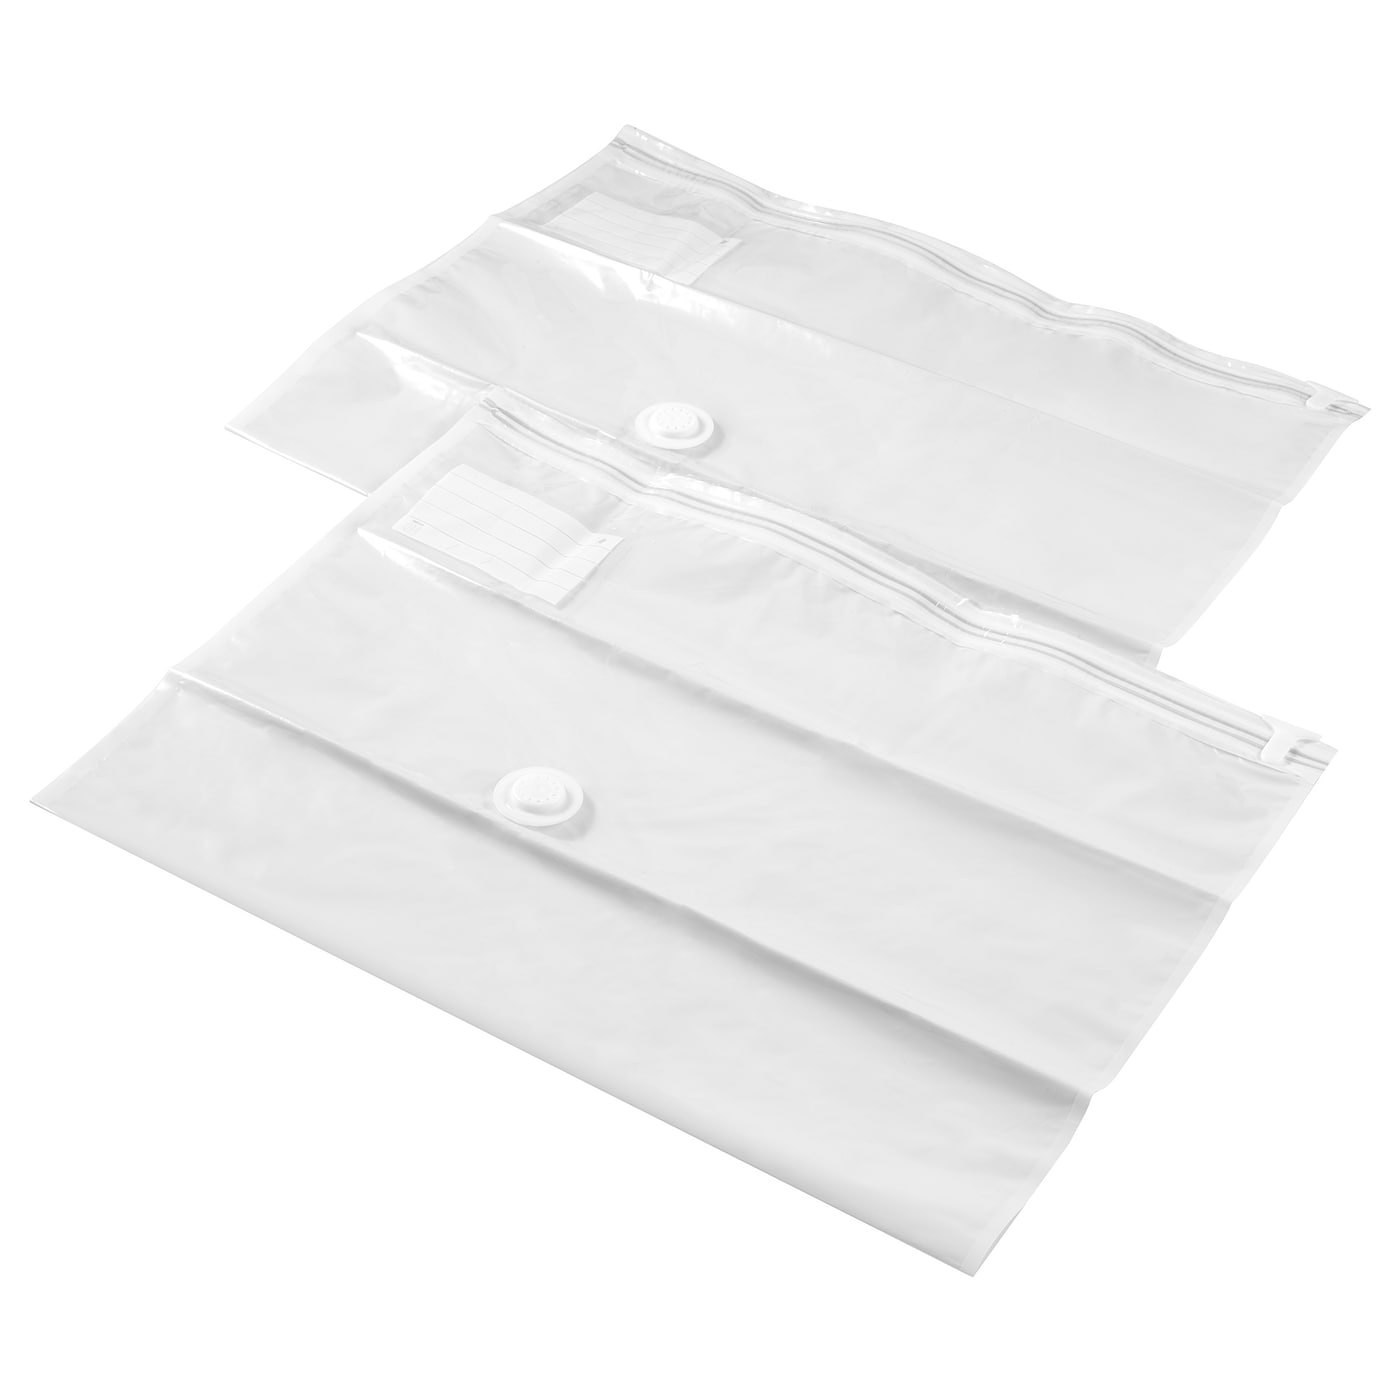 SPANTAD Вакуумный пакет, светло-серый, 67x100 см2 шт. IKEA фотографии